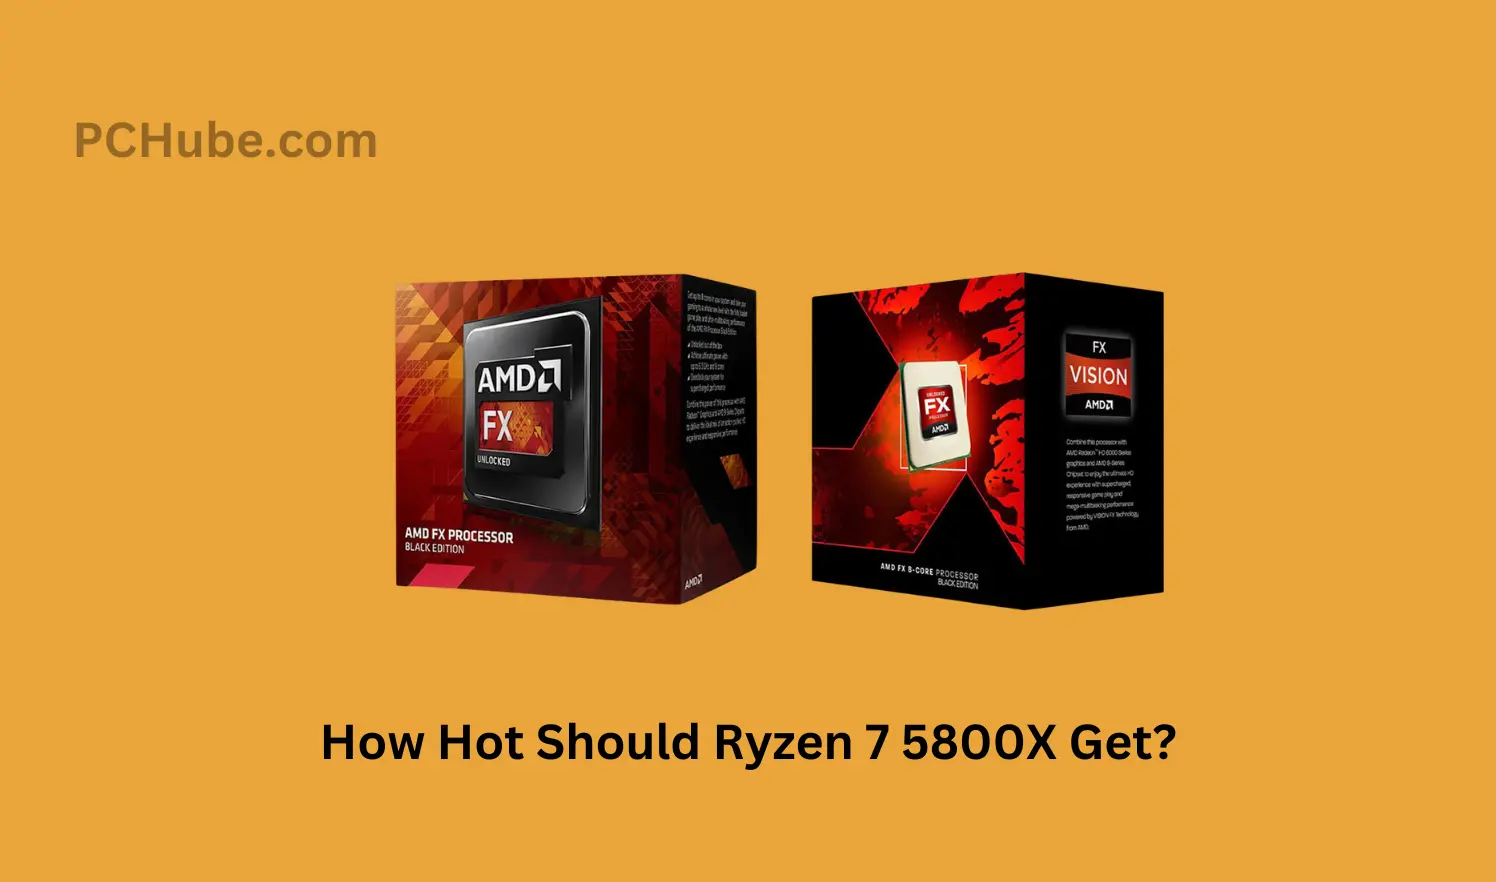 How Hot Should Ryzen 7 5800X Get?